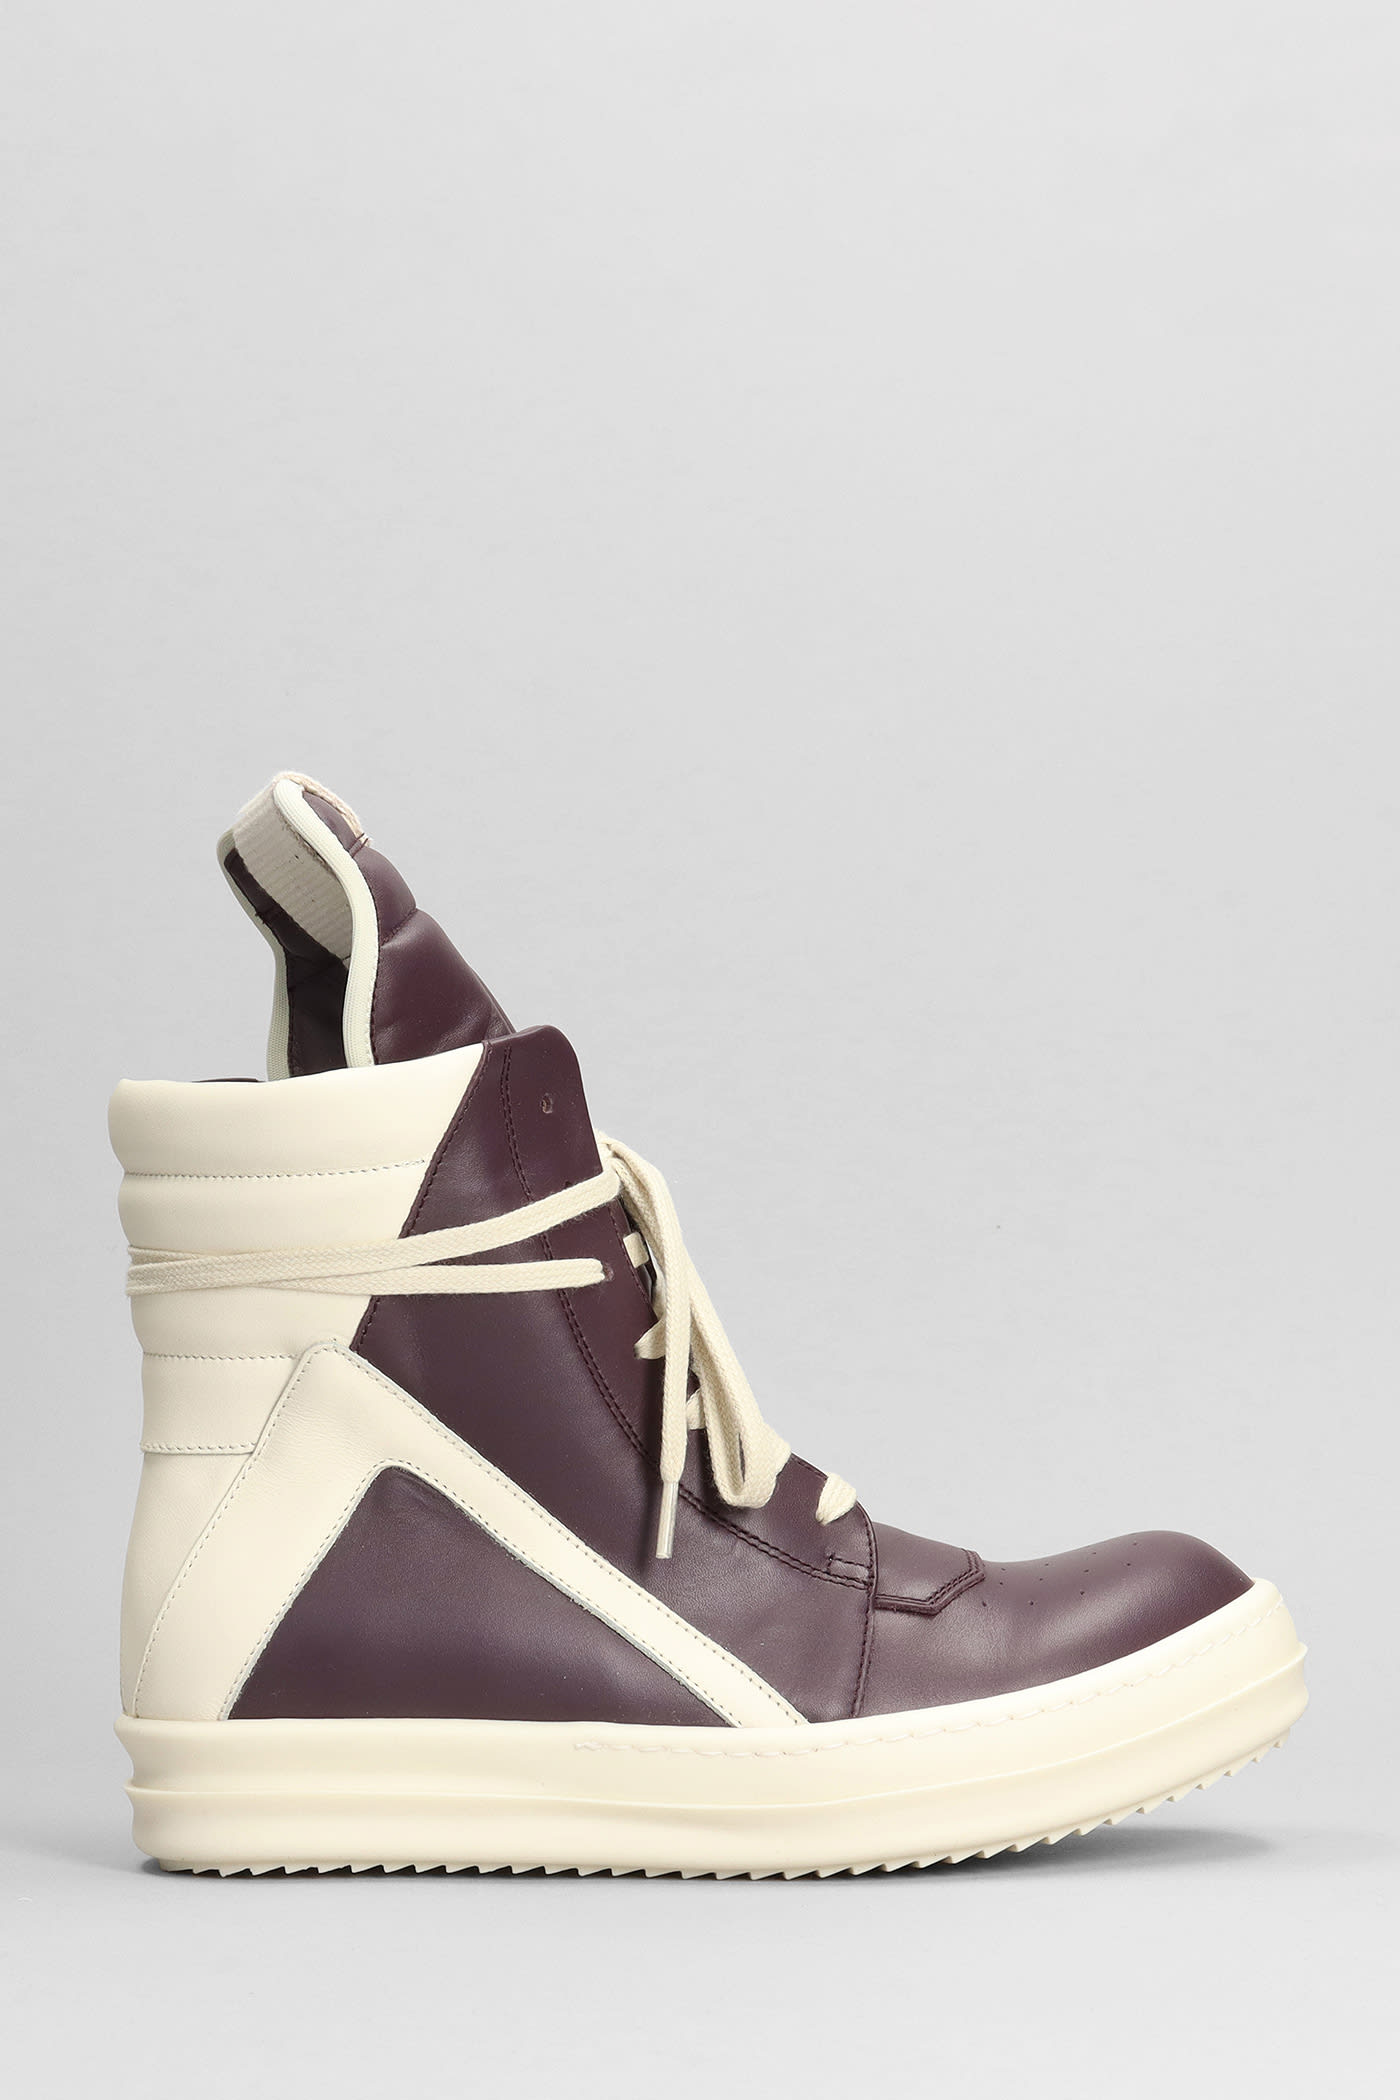 Rick Owens Geobasket Sneakers In Viola Leather